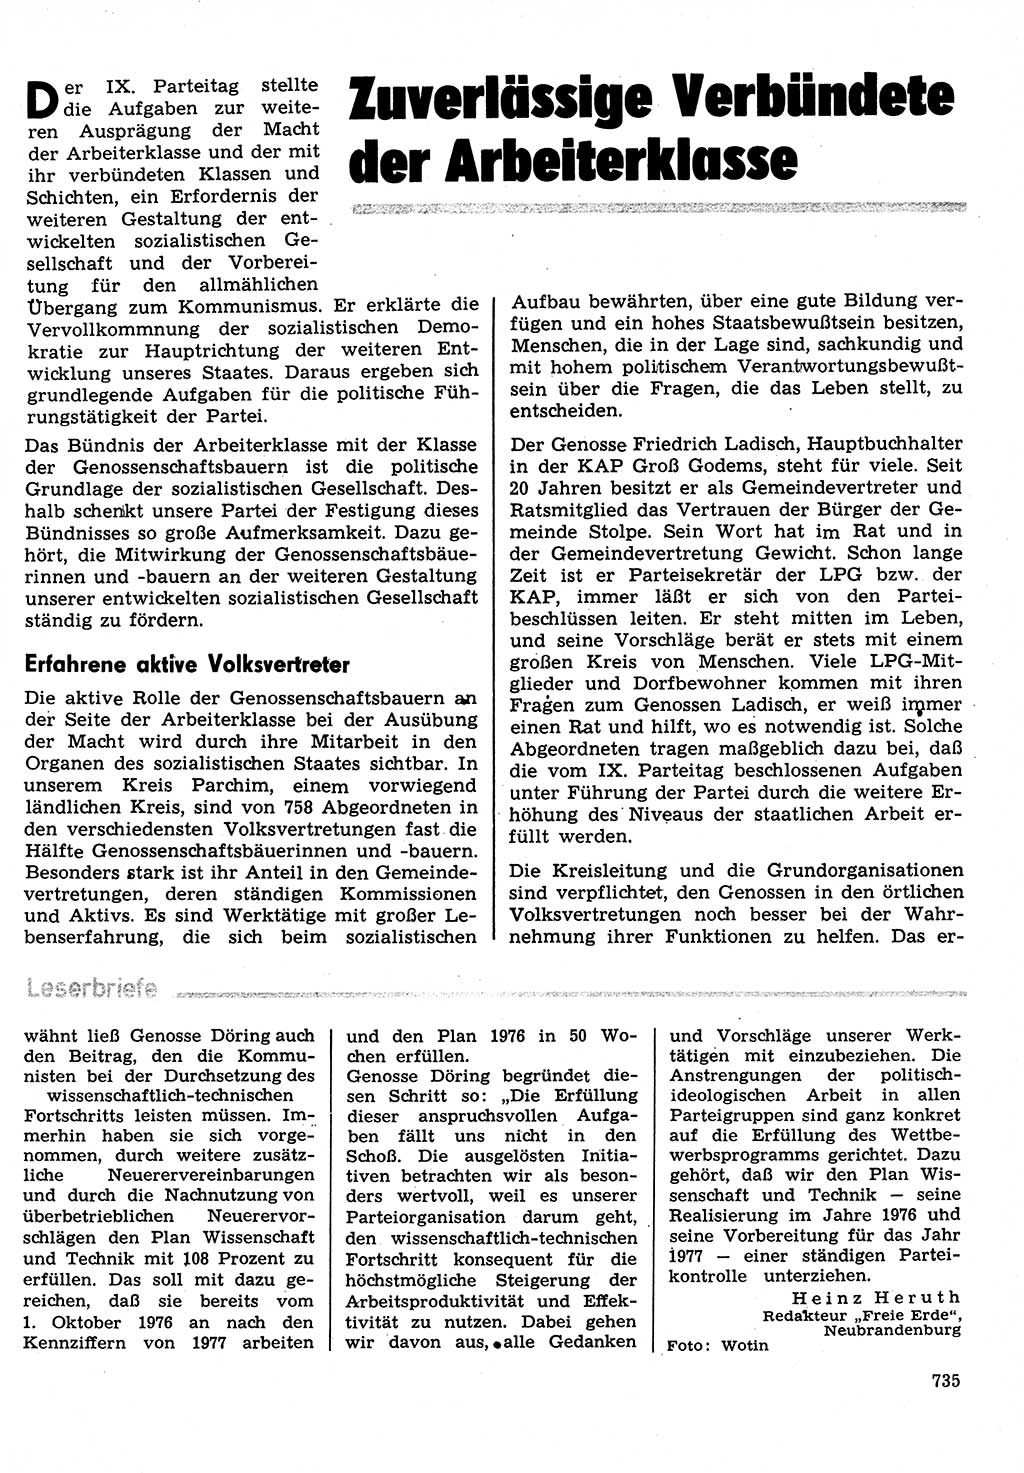 Neuer Weg (NW), Organ des Zentralkomitees (ZK) der SED (Sozialistische Einheitspartei Deutschlands) für Fragen des Parteilebens, 31. Jahrgang [Deutsche Demokratische Republik (DDR)] 1976, Seite 735 (NW ZK SED DDR 1976, S. 735)